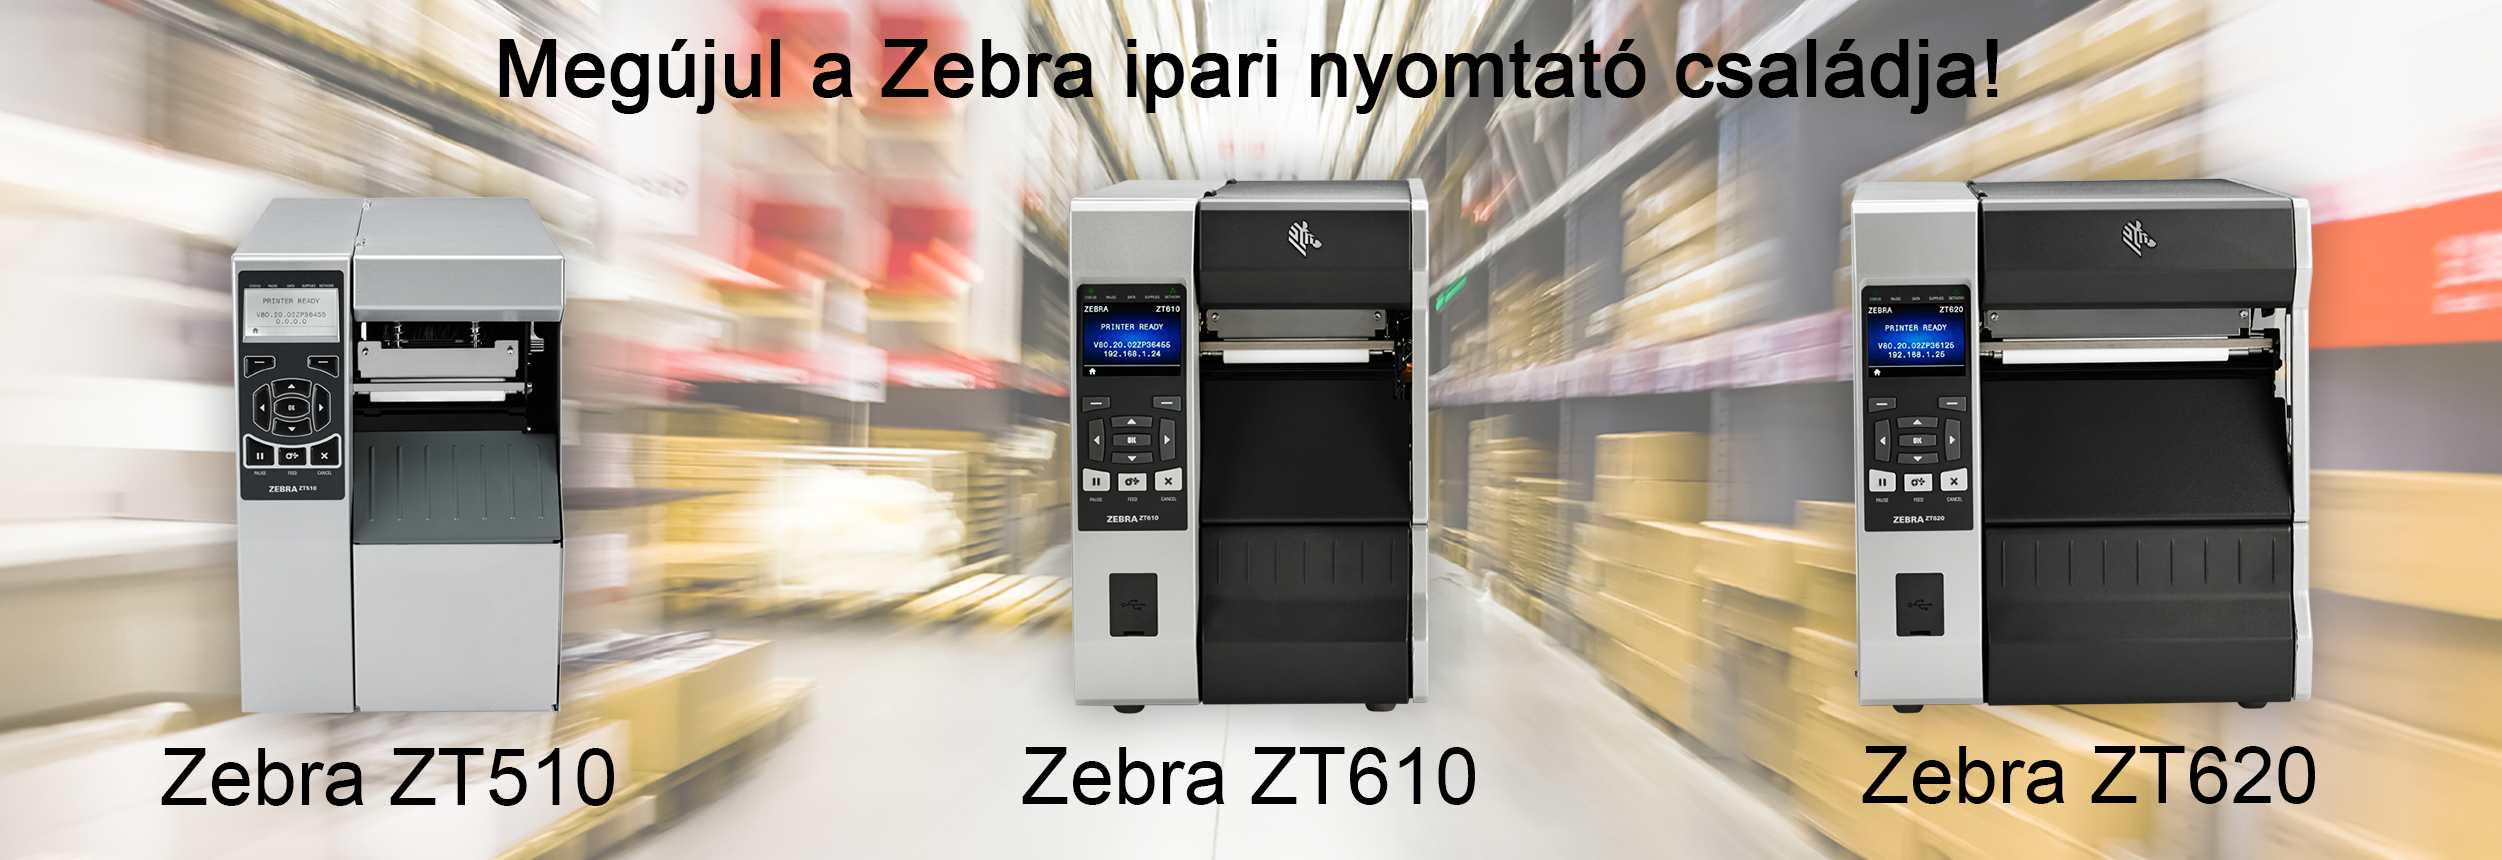 Zebra ZT510, Zebra ZT610, Zebra ZT620 ipari címkenyomtató